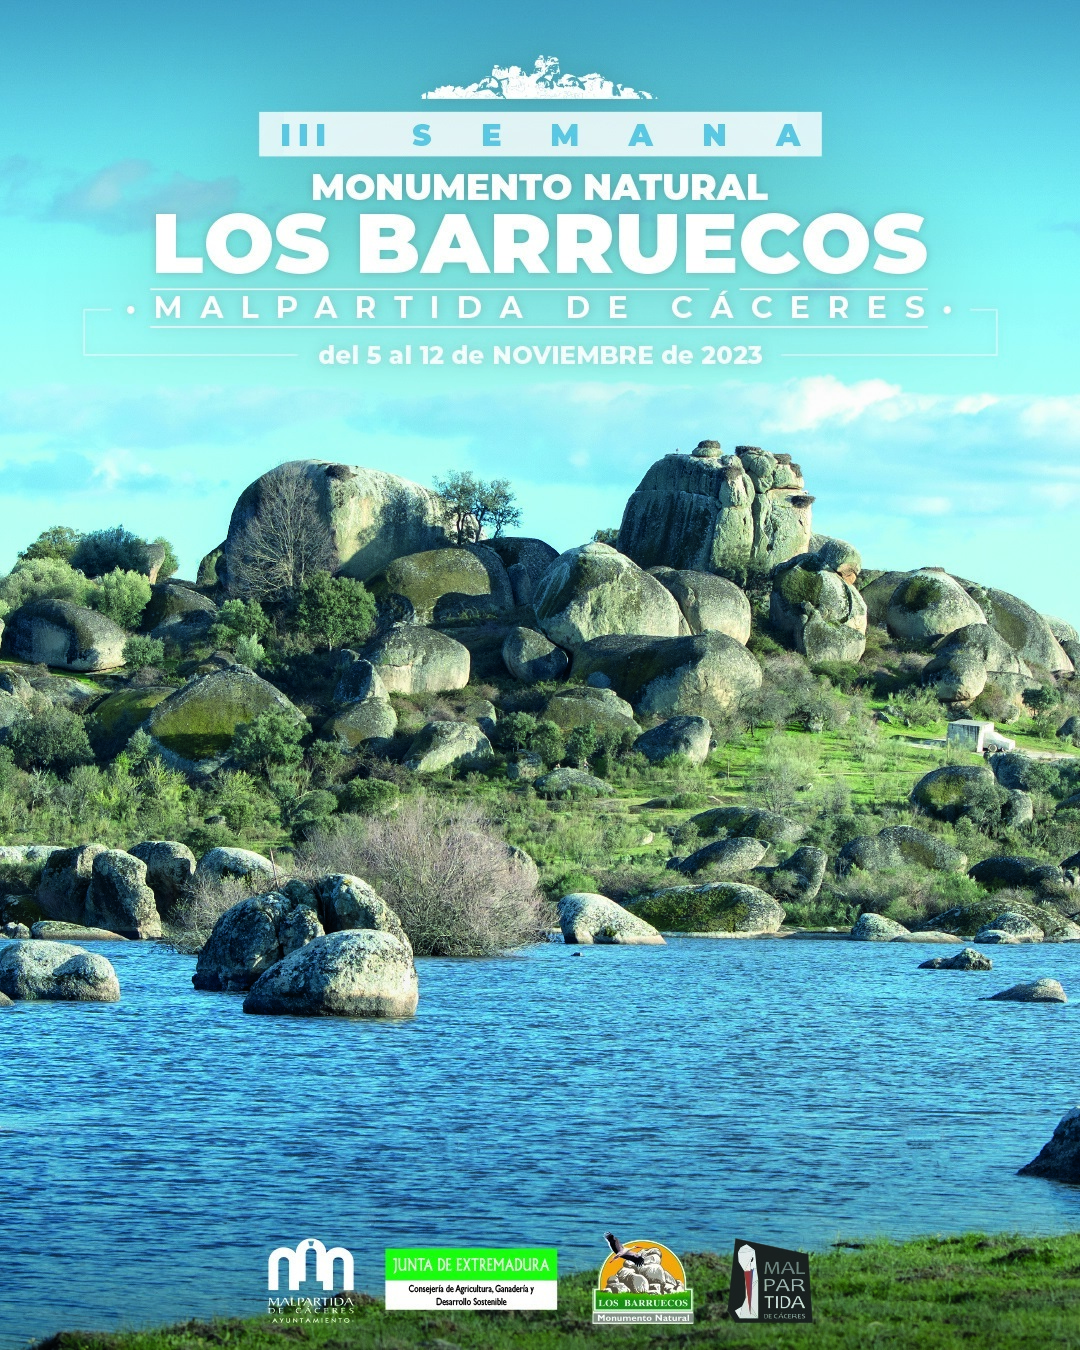 Malpartida de Cáceres celebra la III Semana del Monumento Natural Los Barruecos con actividades culturales y lúdicas